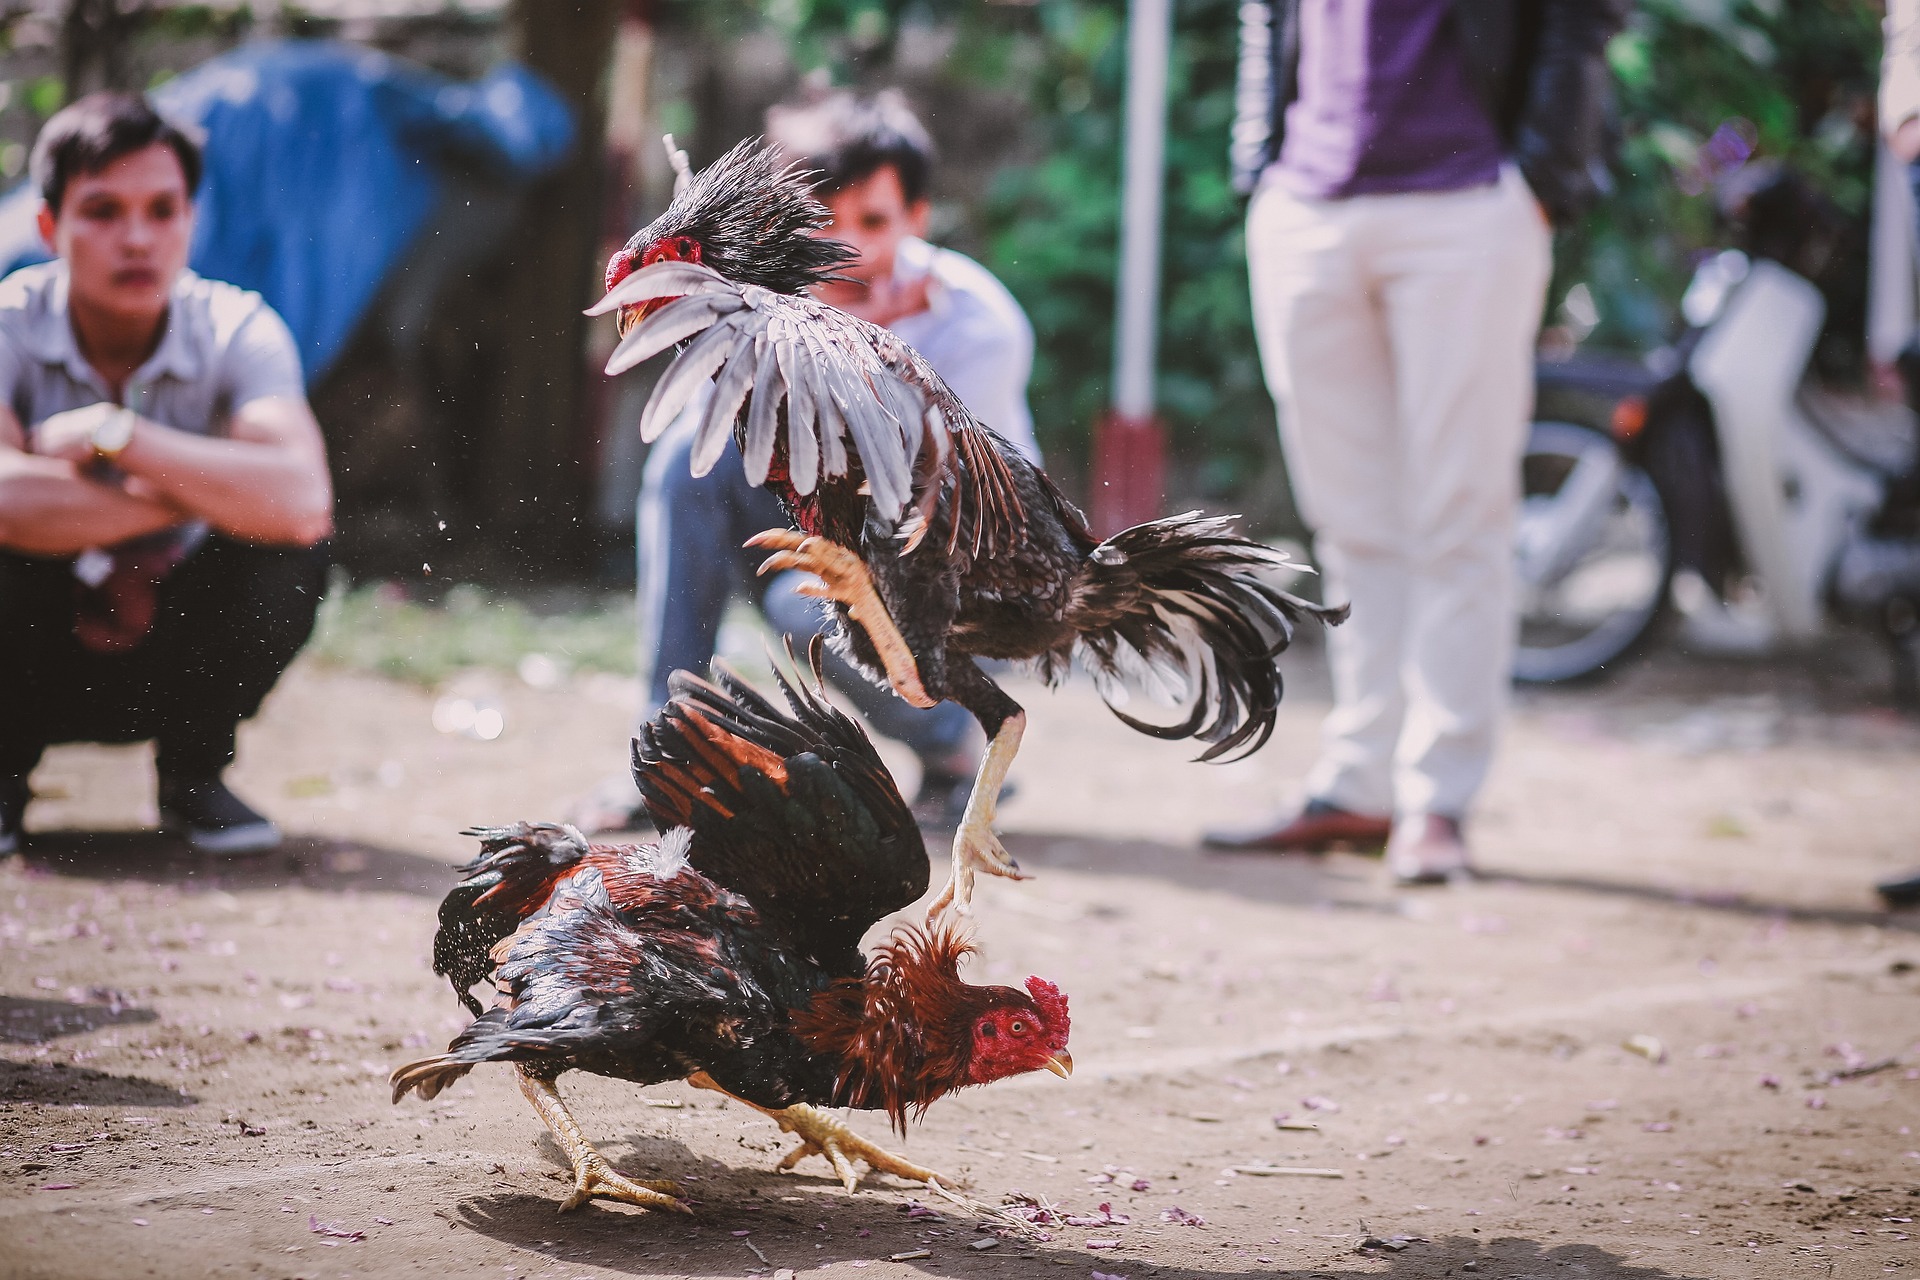 Peleas de gallos: legalidad de un maltrato “tradicional”